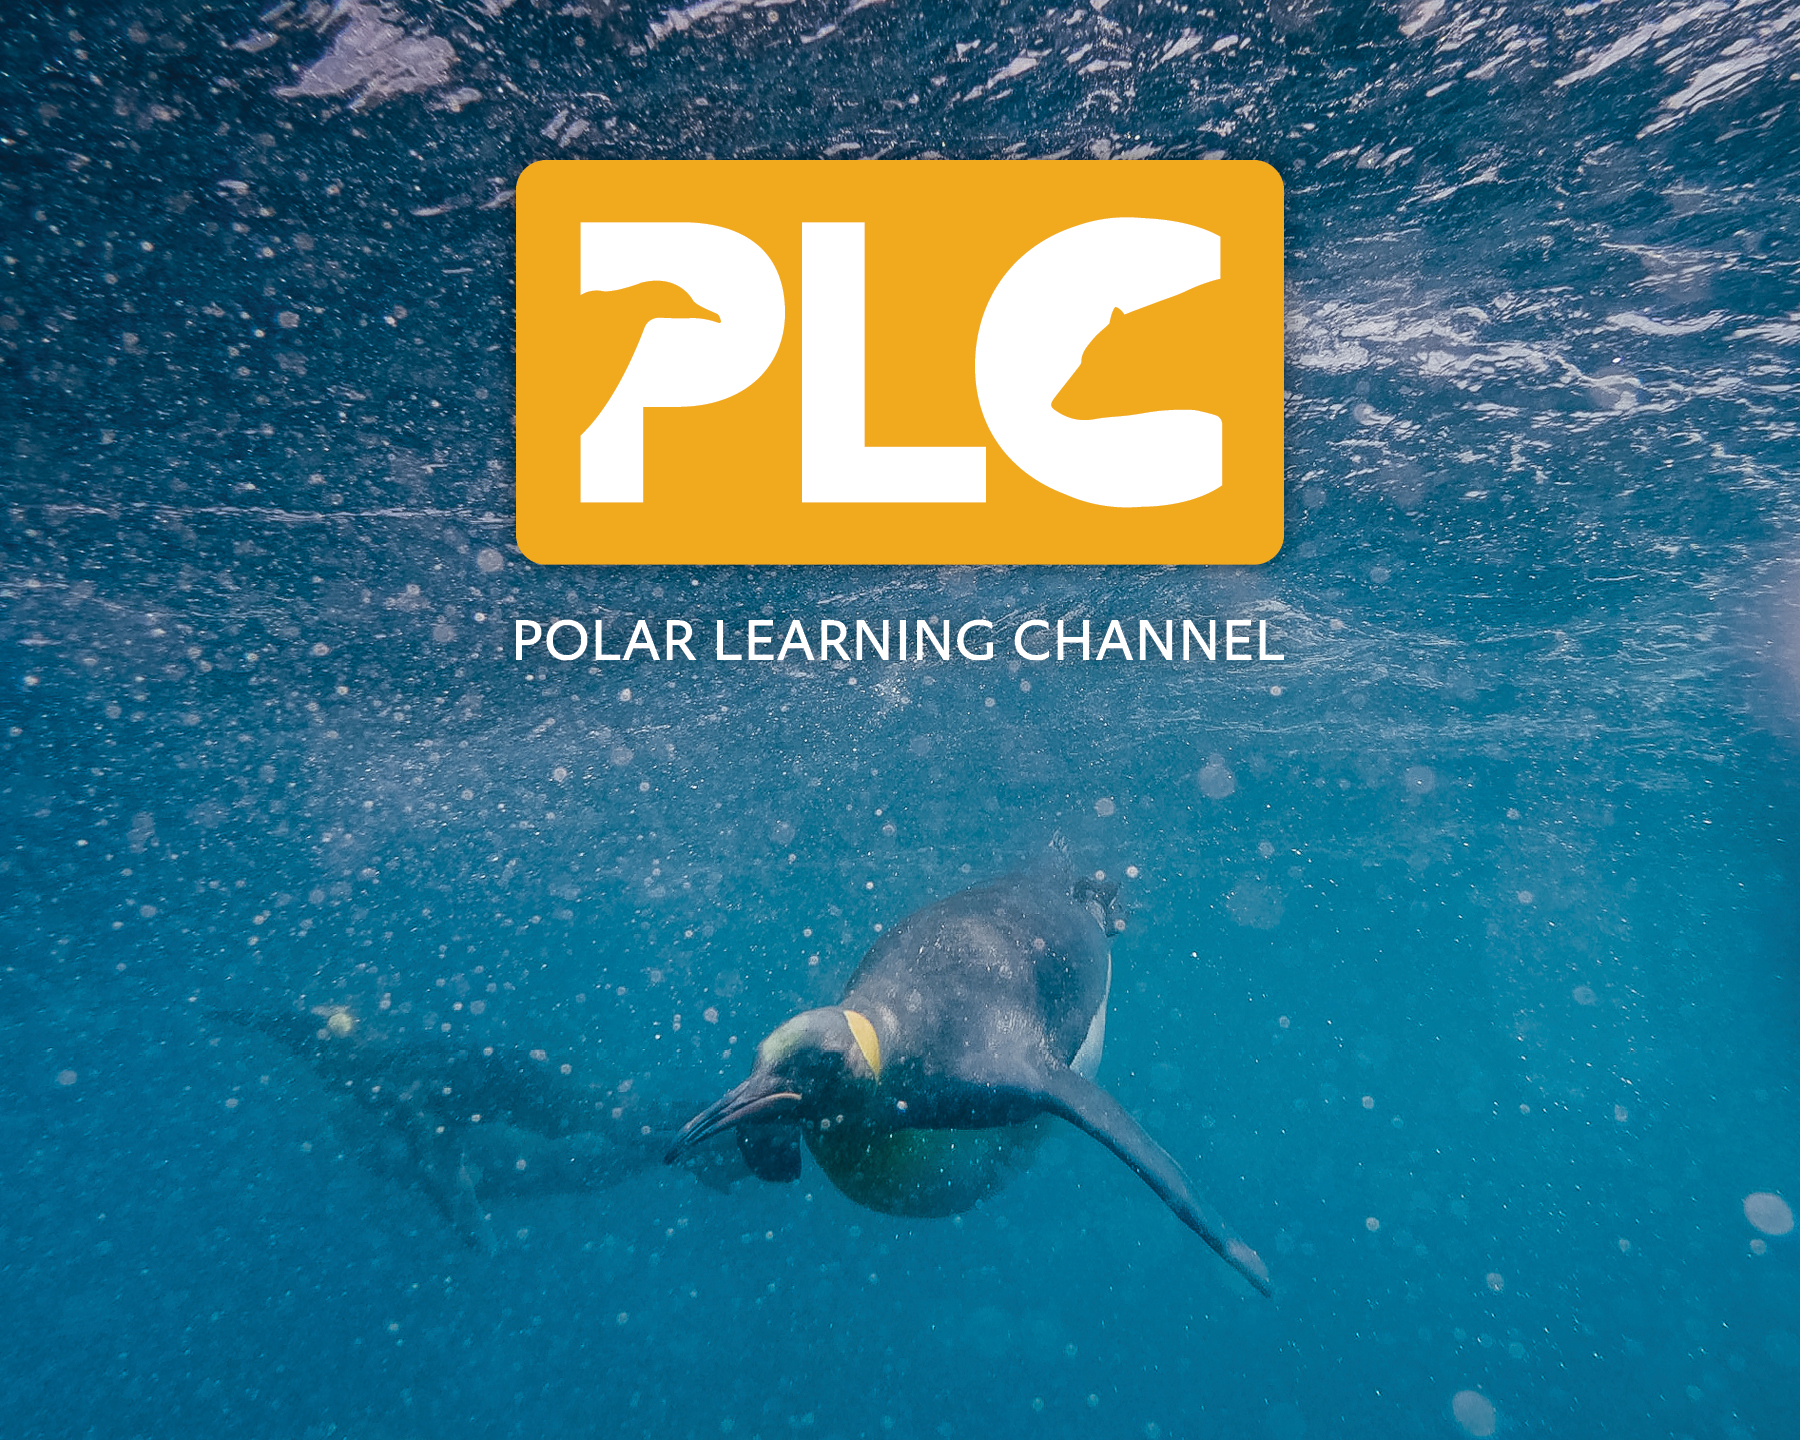 King penguin underwater, besides PLC logo